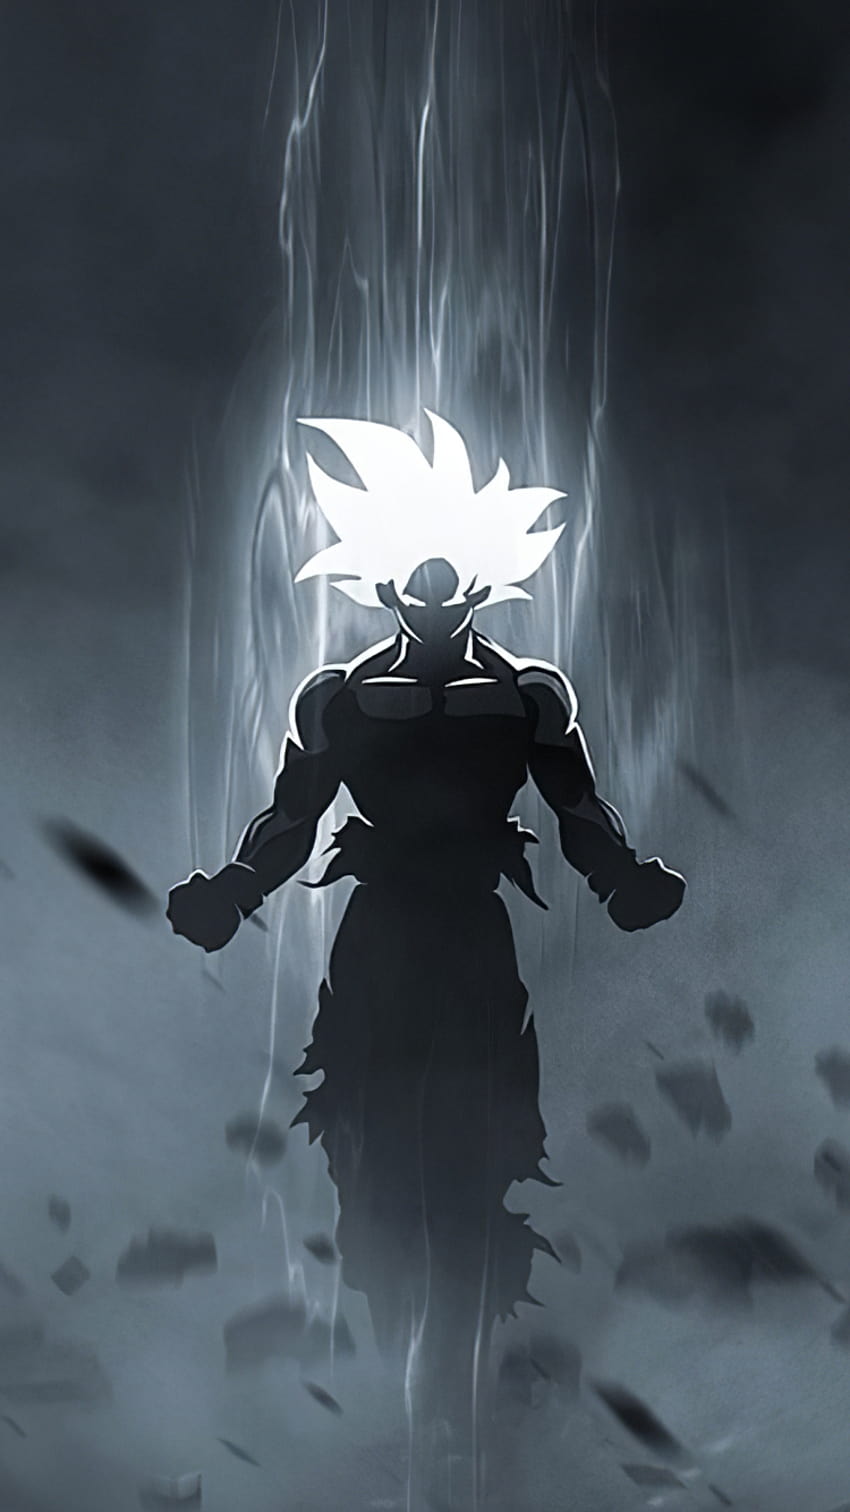 Goku là một nhân vật nổi tiếng trong bộ truyện tranh Dragon Ball. Nhấp vào hình ảnh để được tìm hiểu thêm về câu chuyện và các tính cách đặc biệt của nhân vật này.